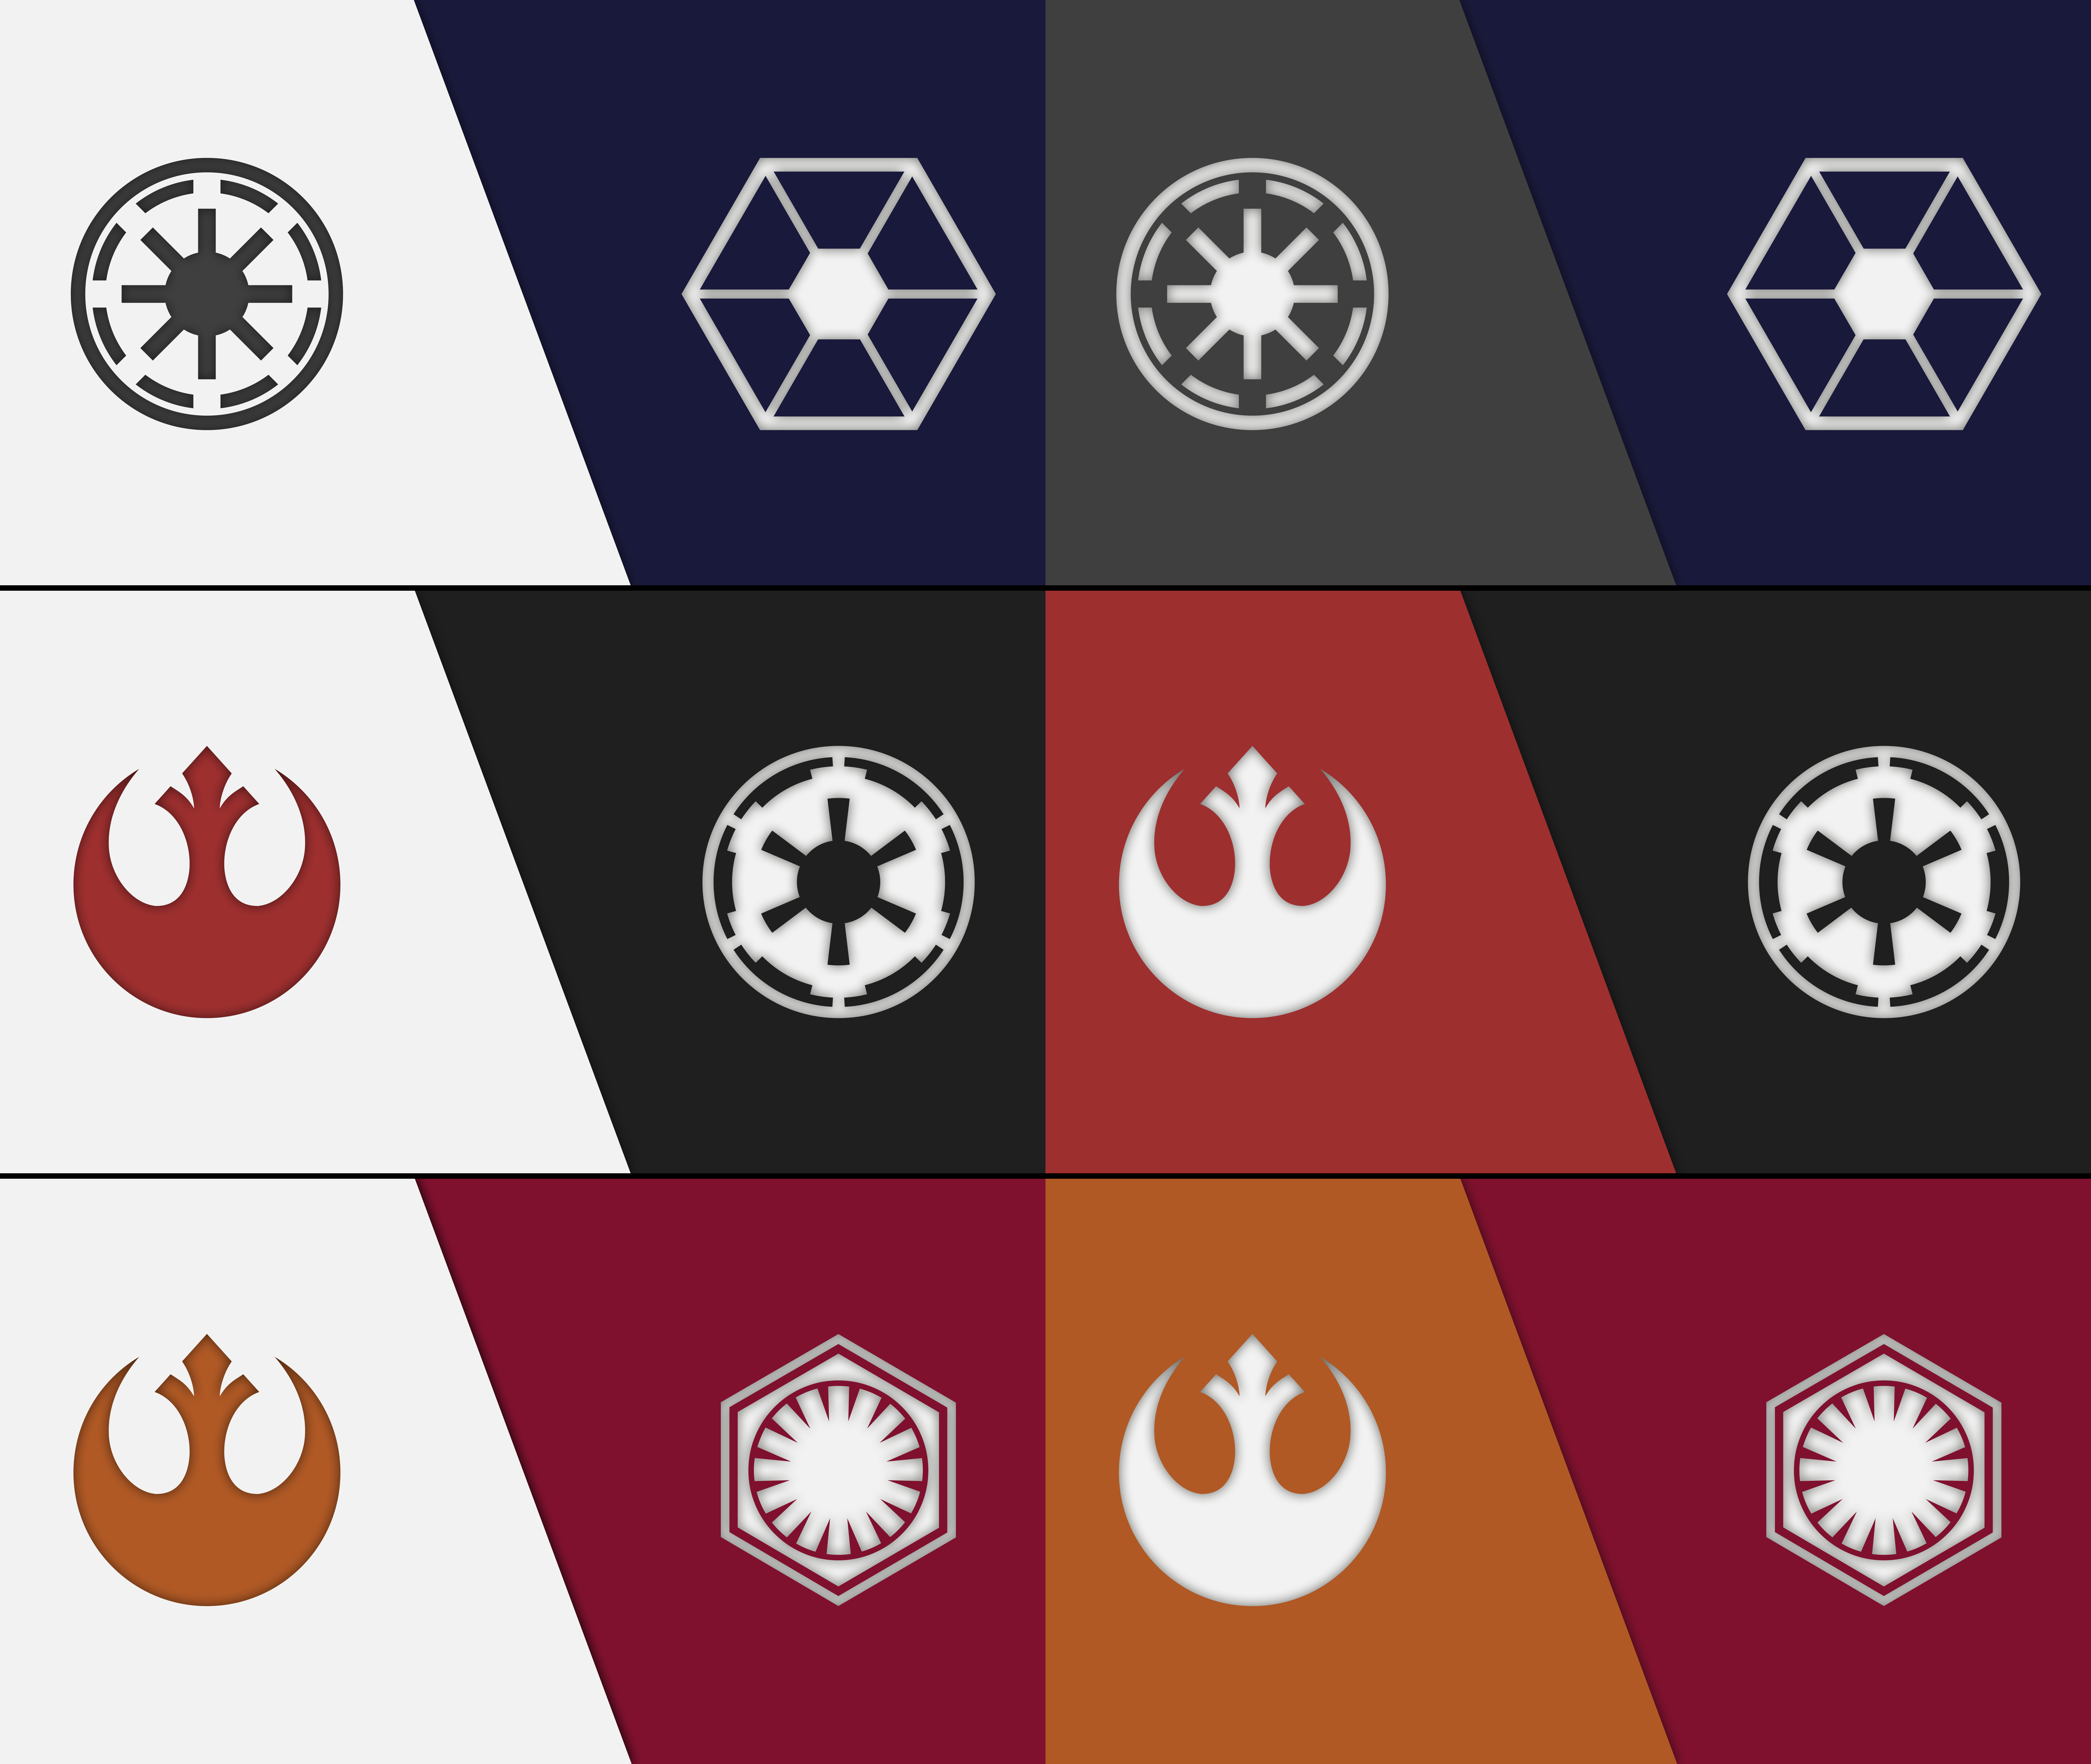 Minimalist Star Wars Empire Wallpapers